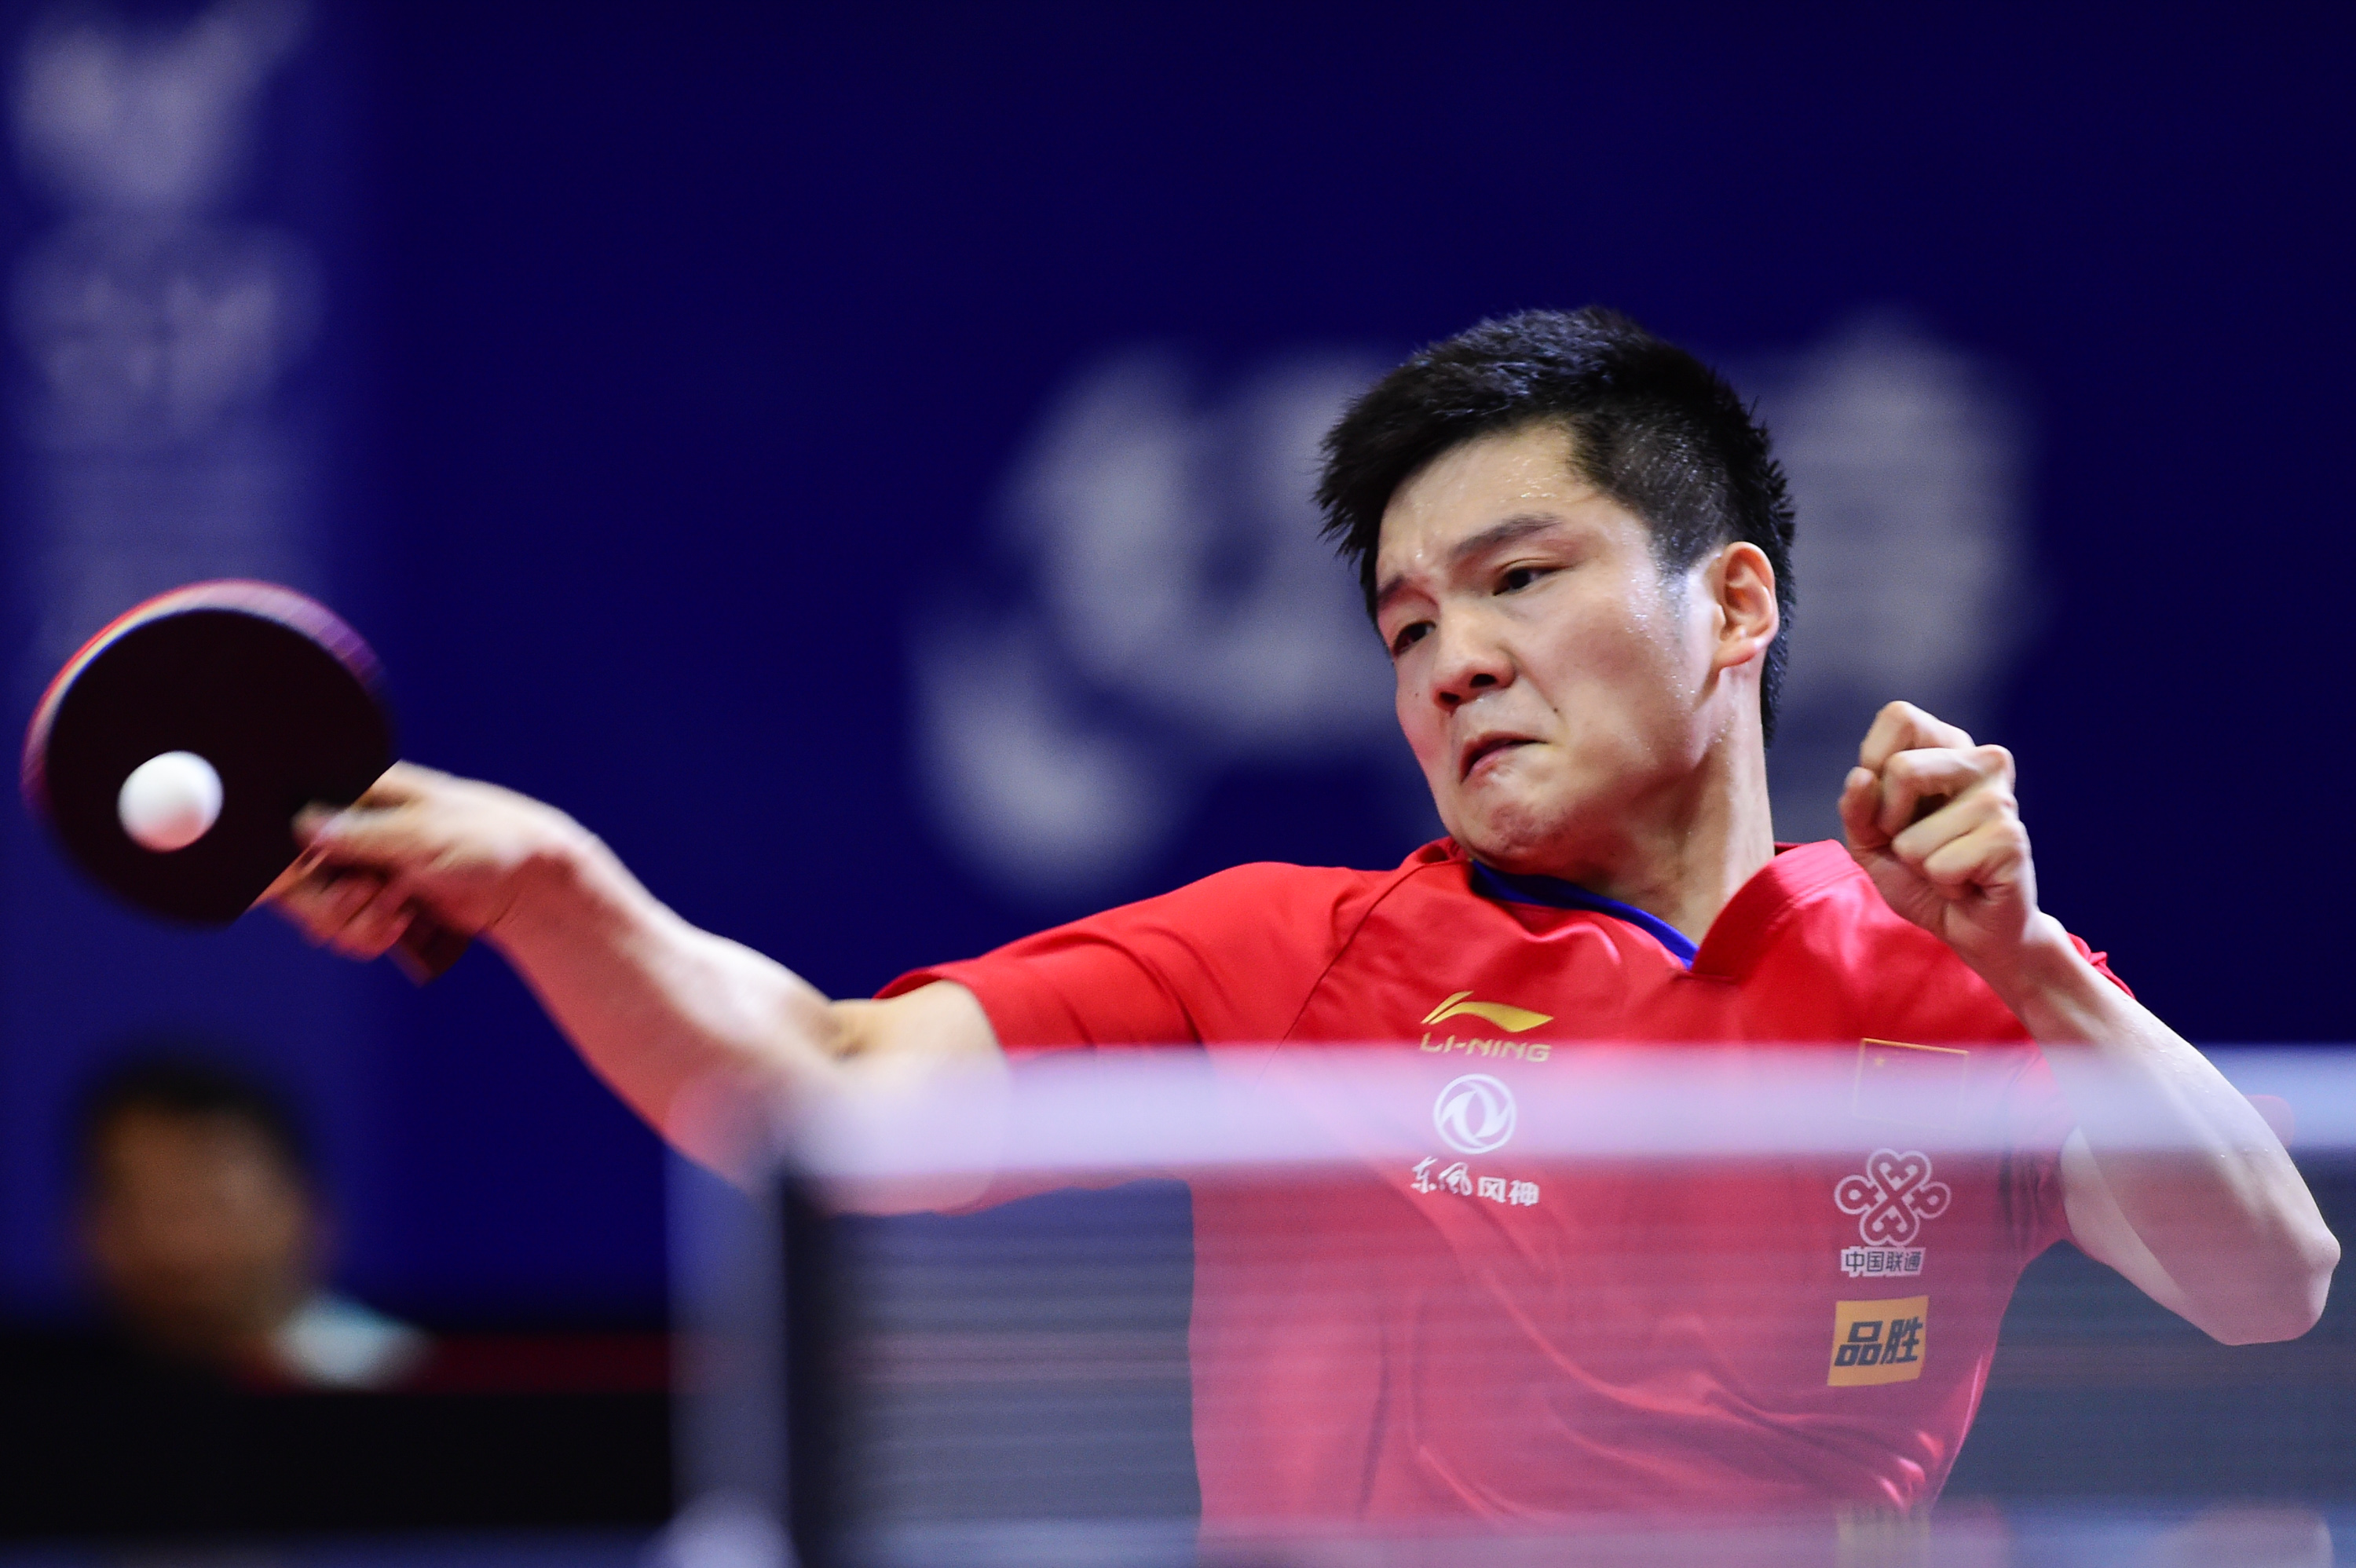 在印度尼西亚日惹举行的2019亚洲乒乓球锦标赛男子团体决赛中,中国队